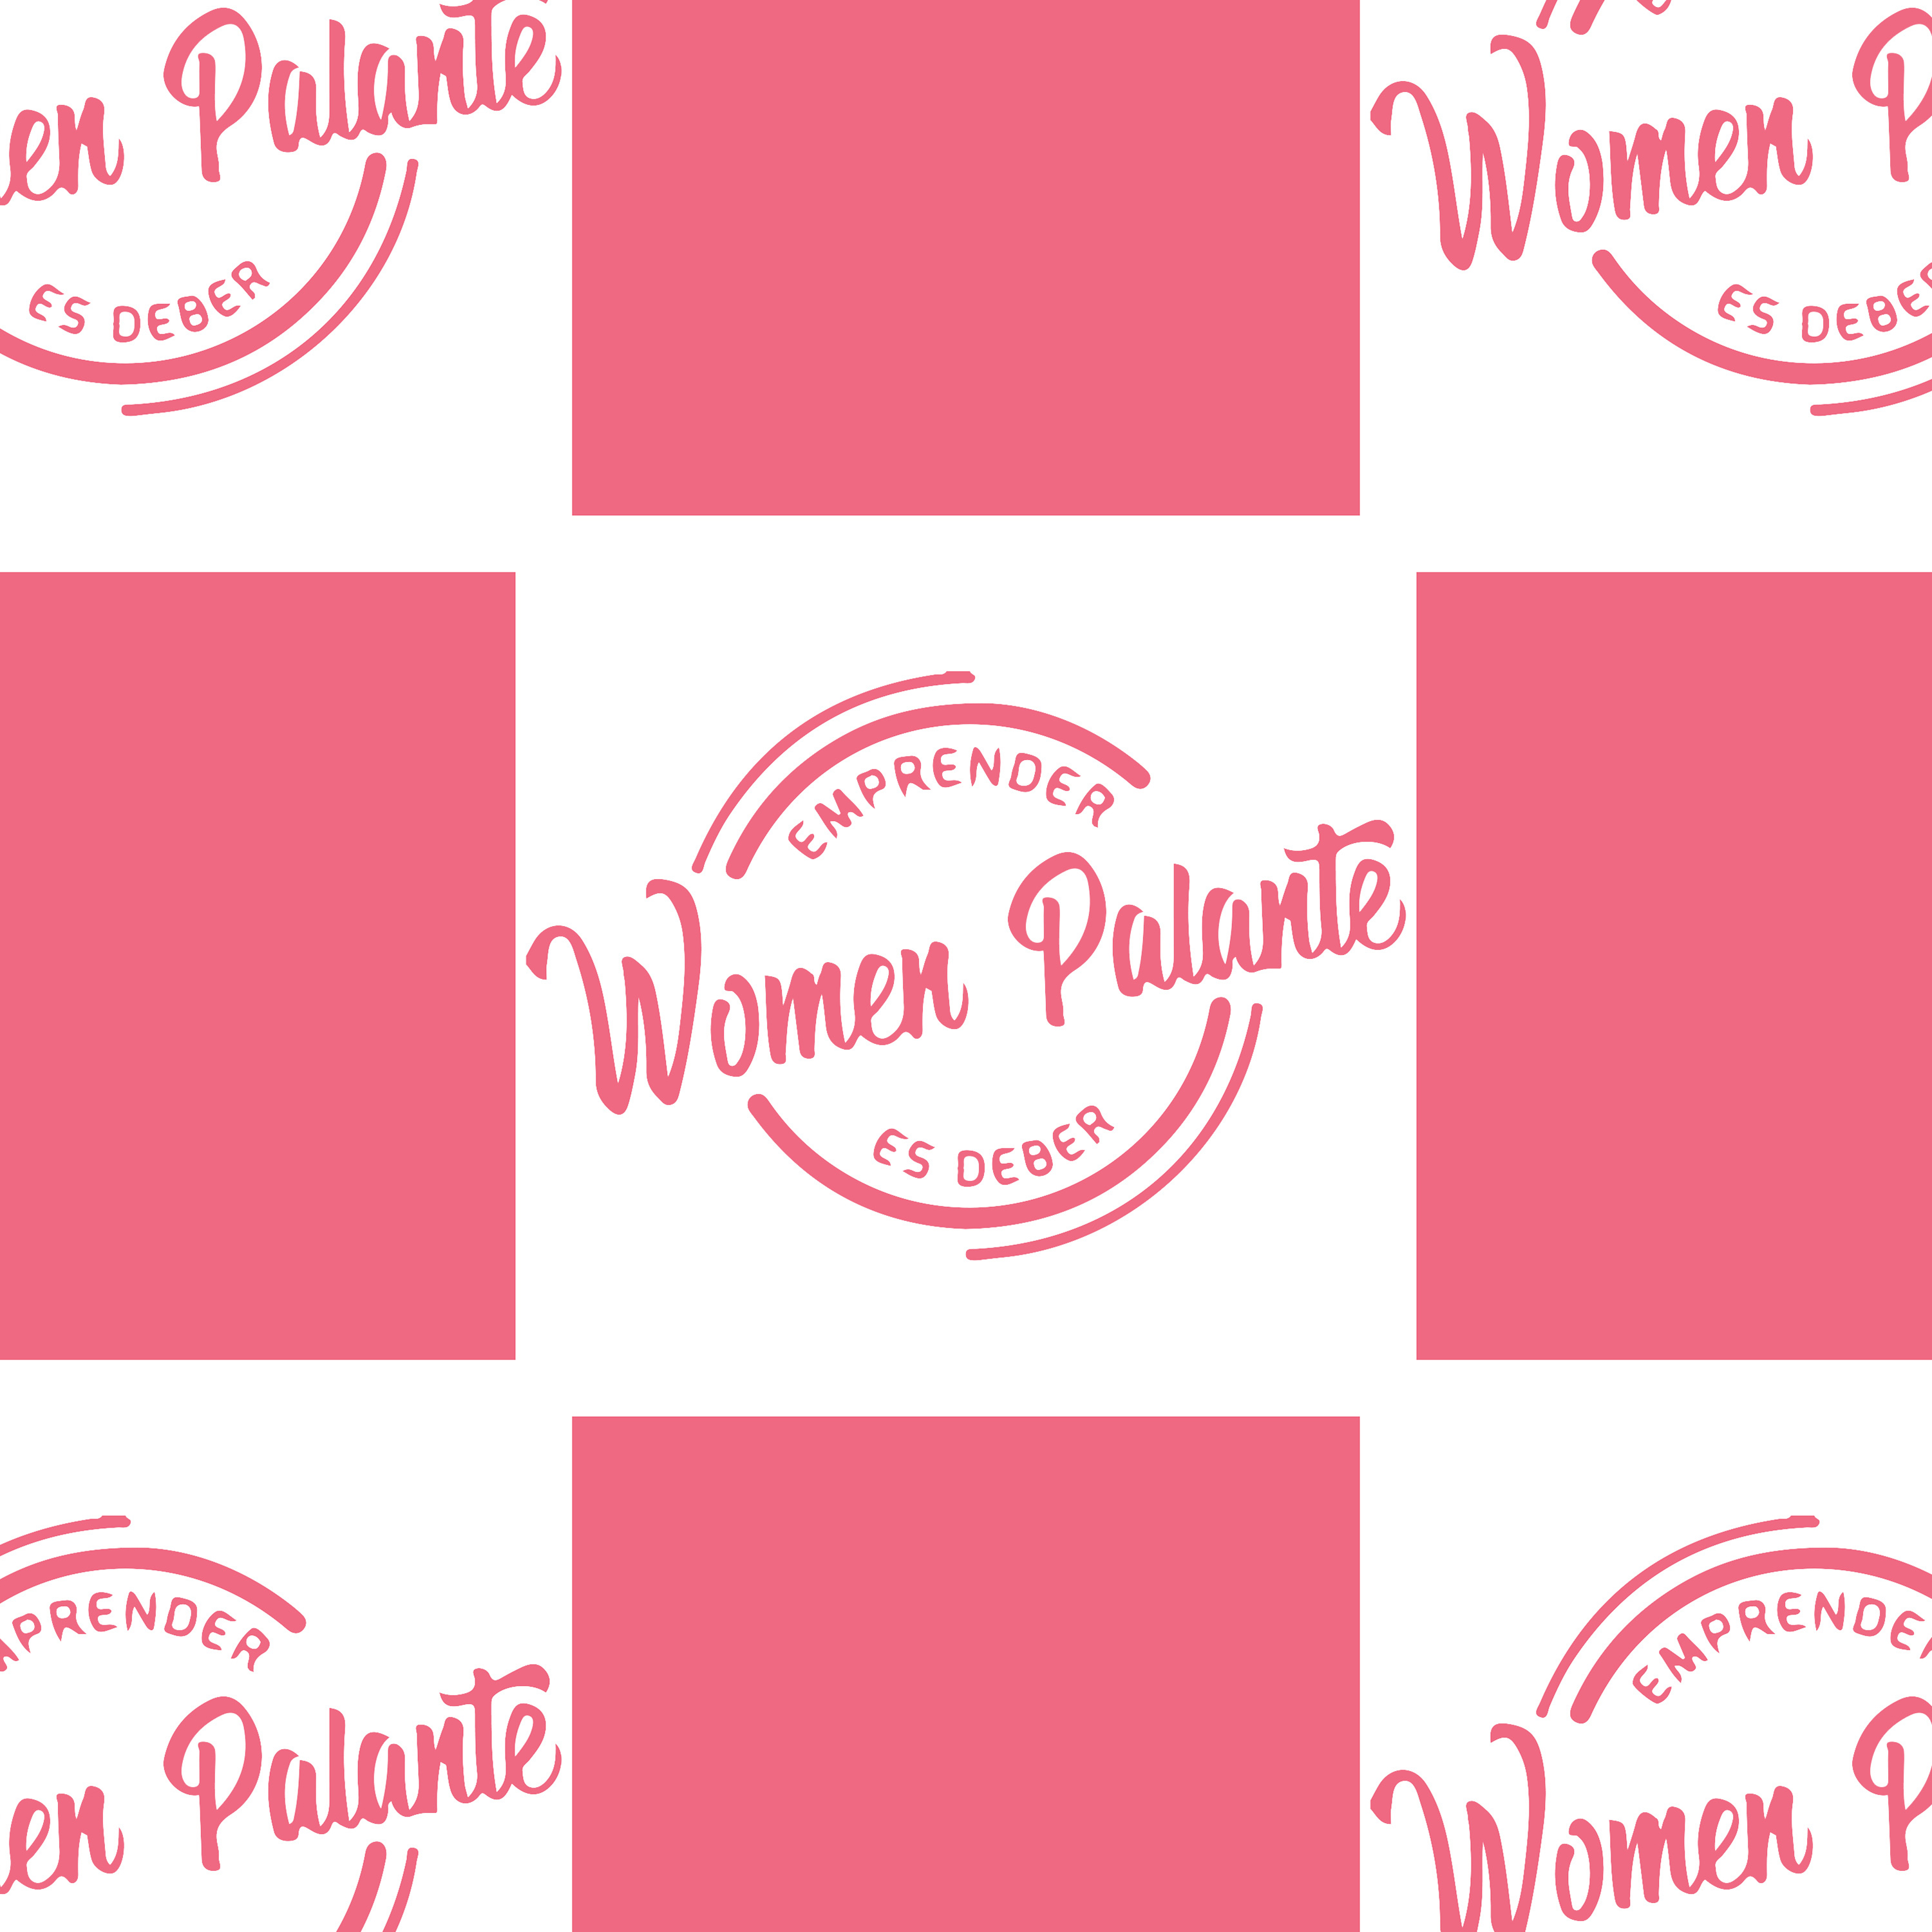 Podcast Cover Women Palante